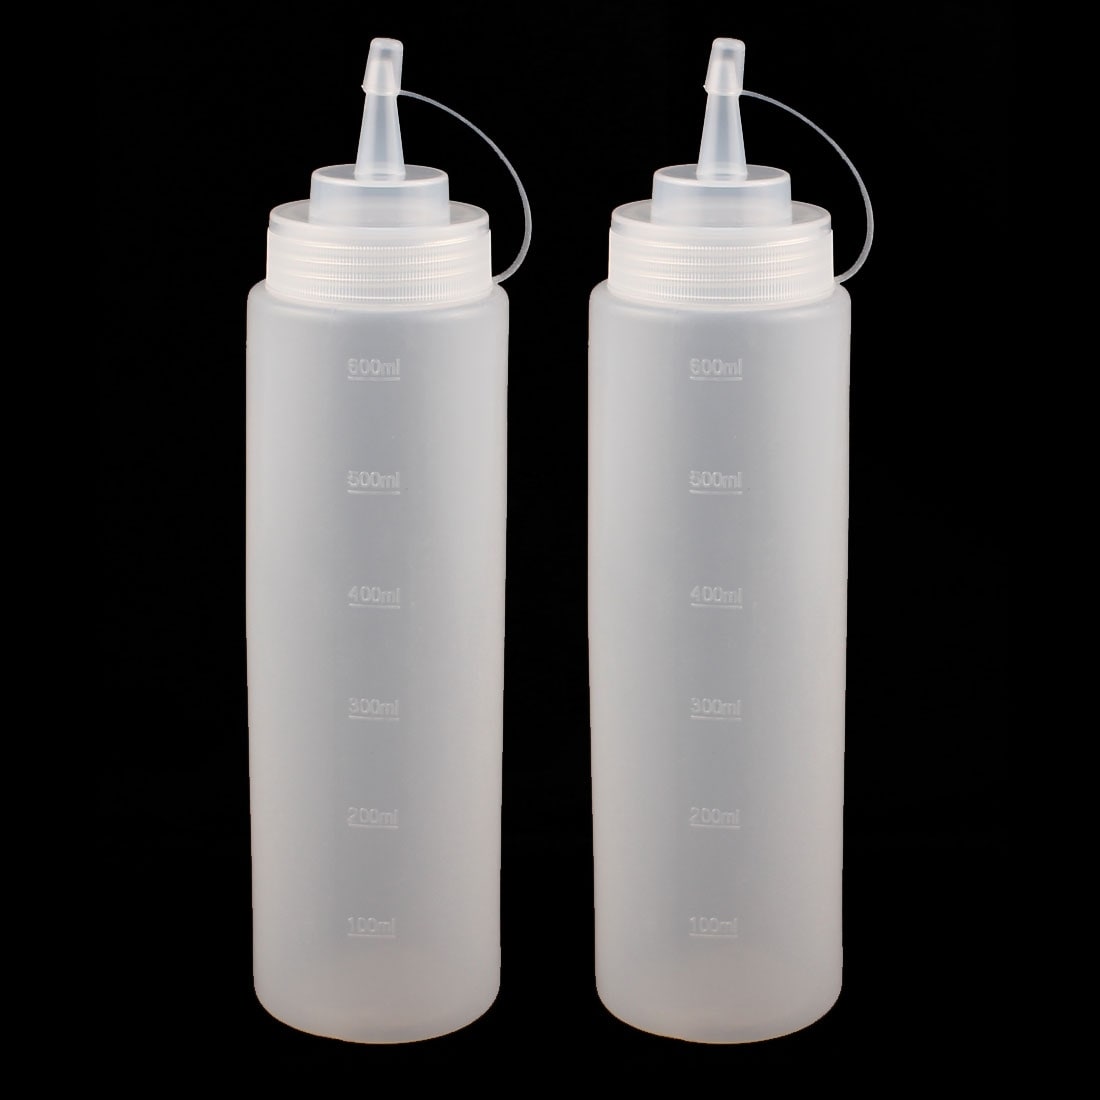 2Pcs Kitchen Lab 20mL Plastic Measuring Cup Jug Pour Spout Container -  Clear - Bed Bath & Beyond - 35771410